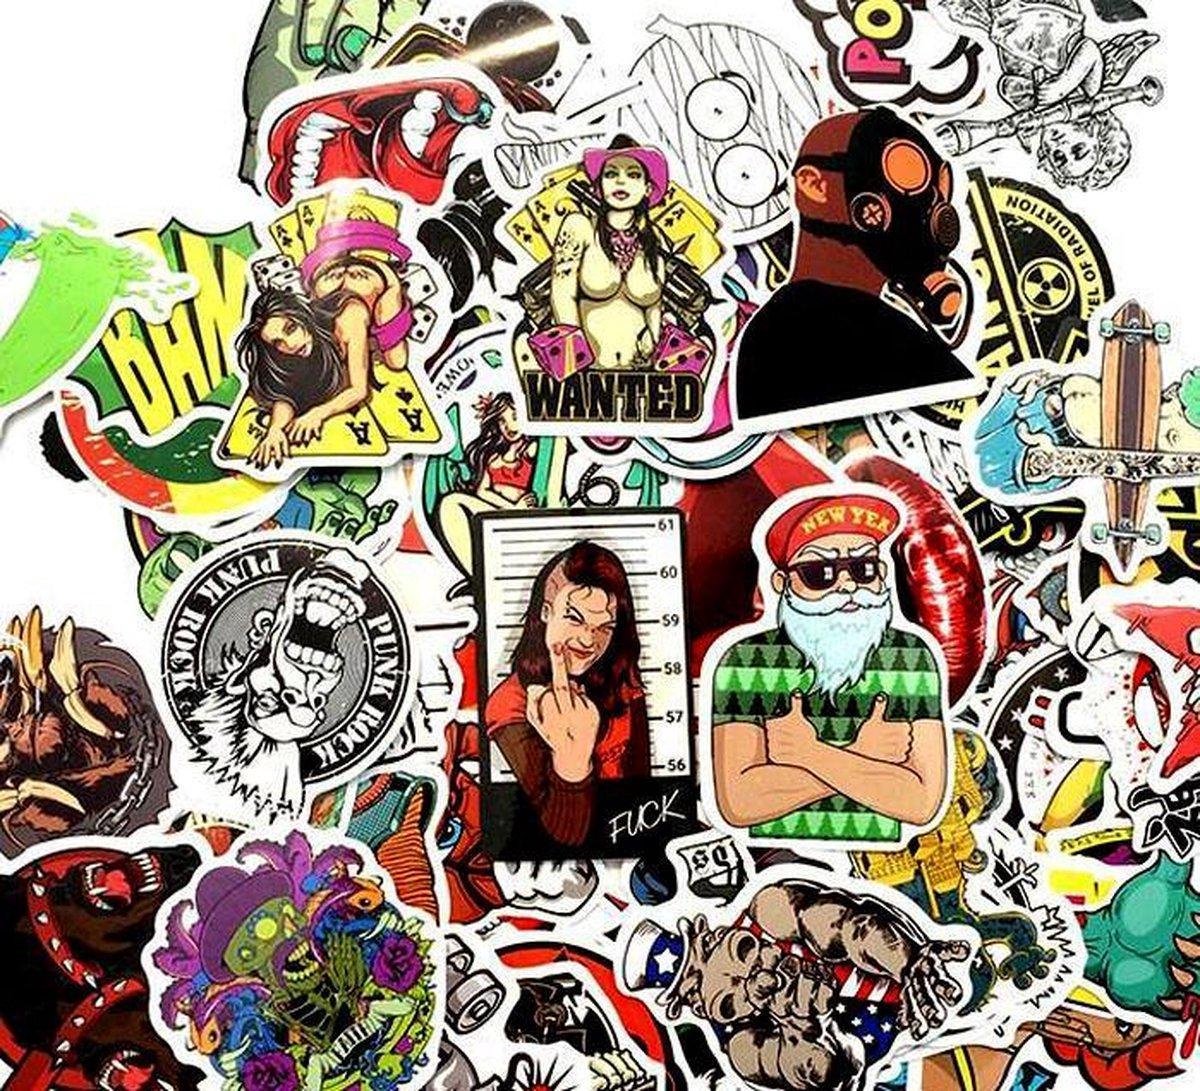 Mix van 50 coole stickers voor laptop, telefoon, skateboard